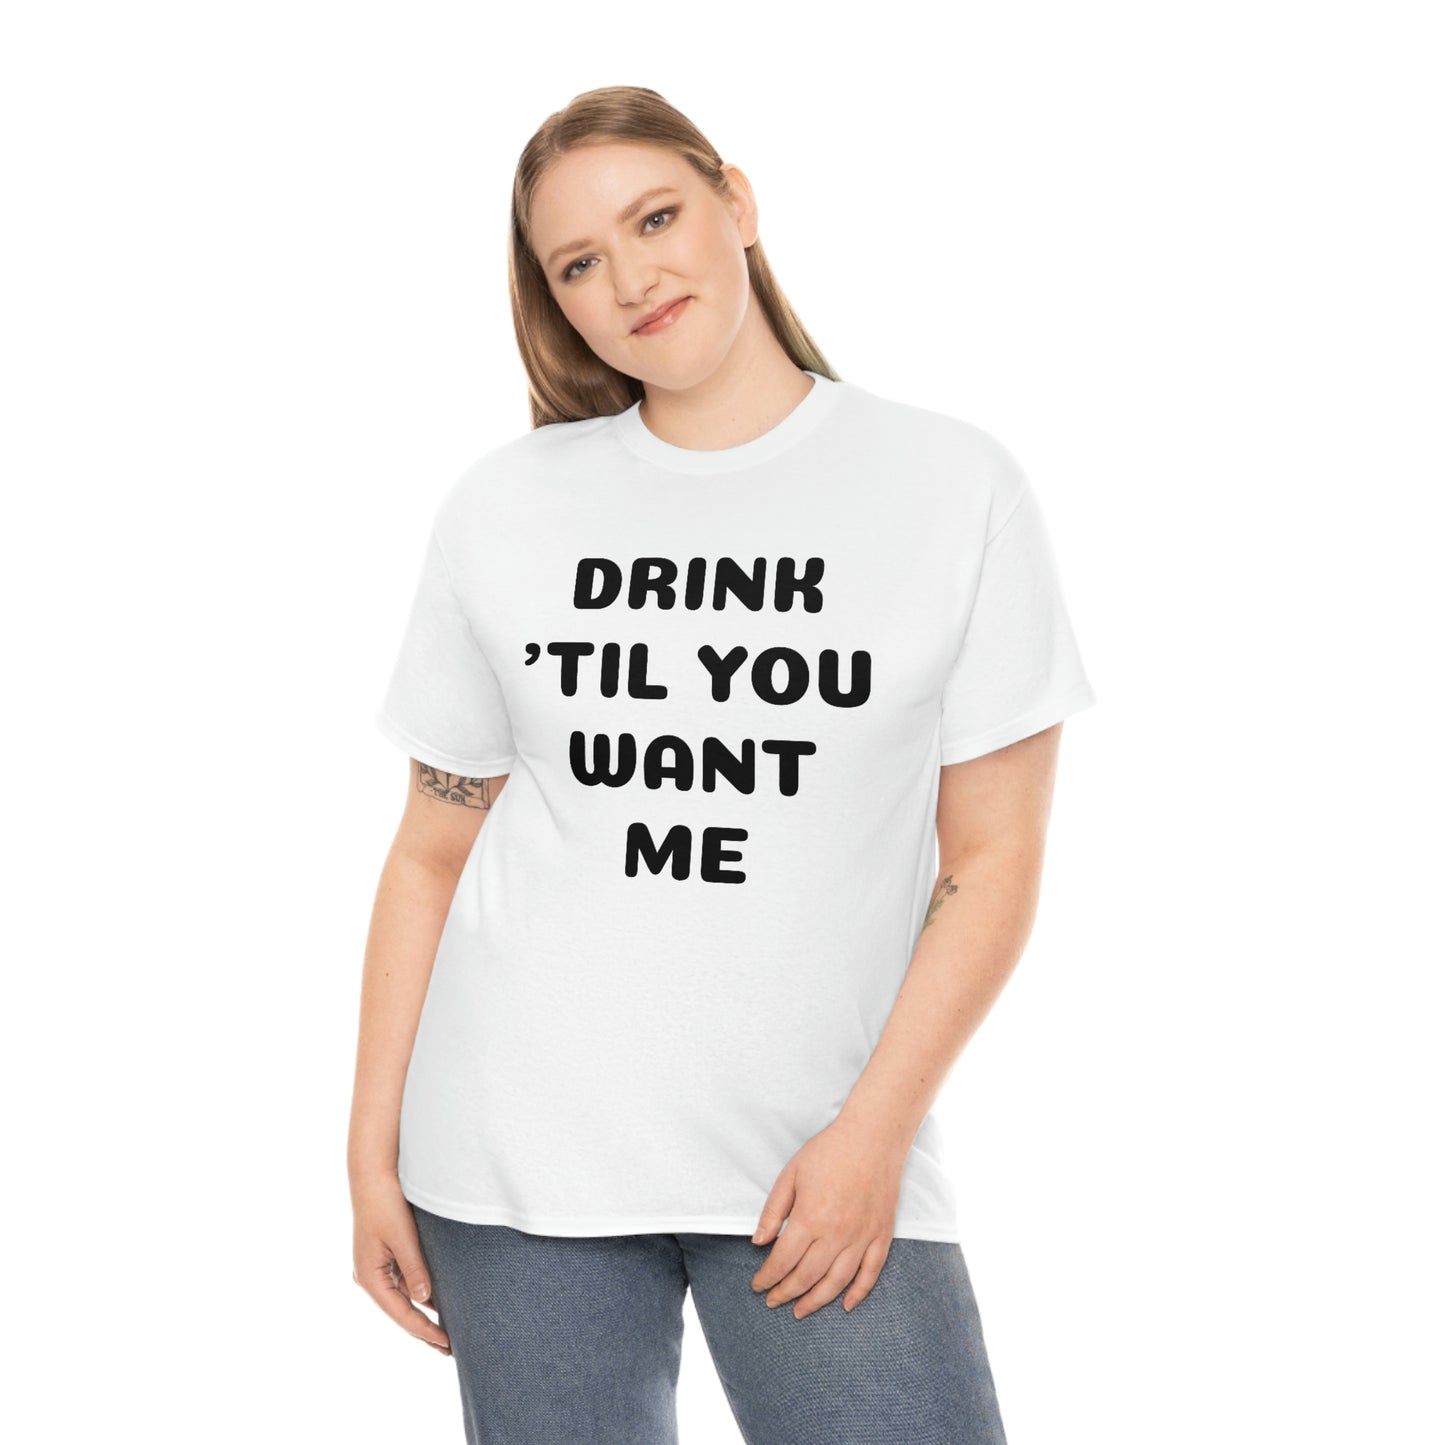 DRINK 'TIL YOU WANT ME T-SHIRT